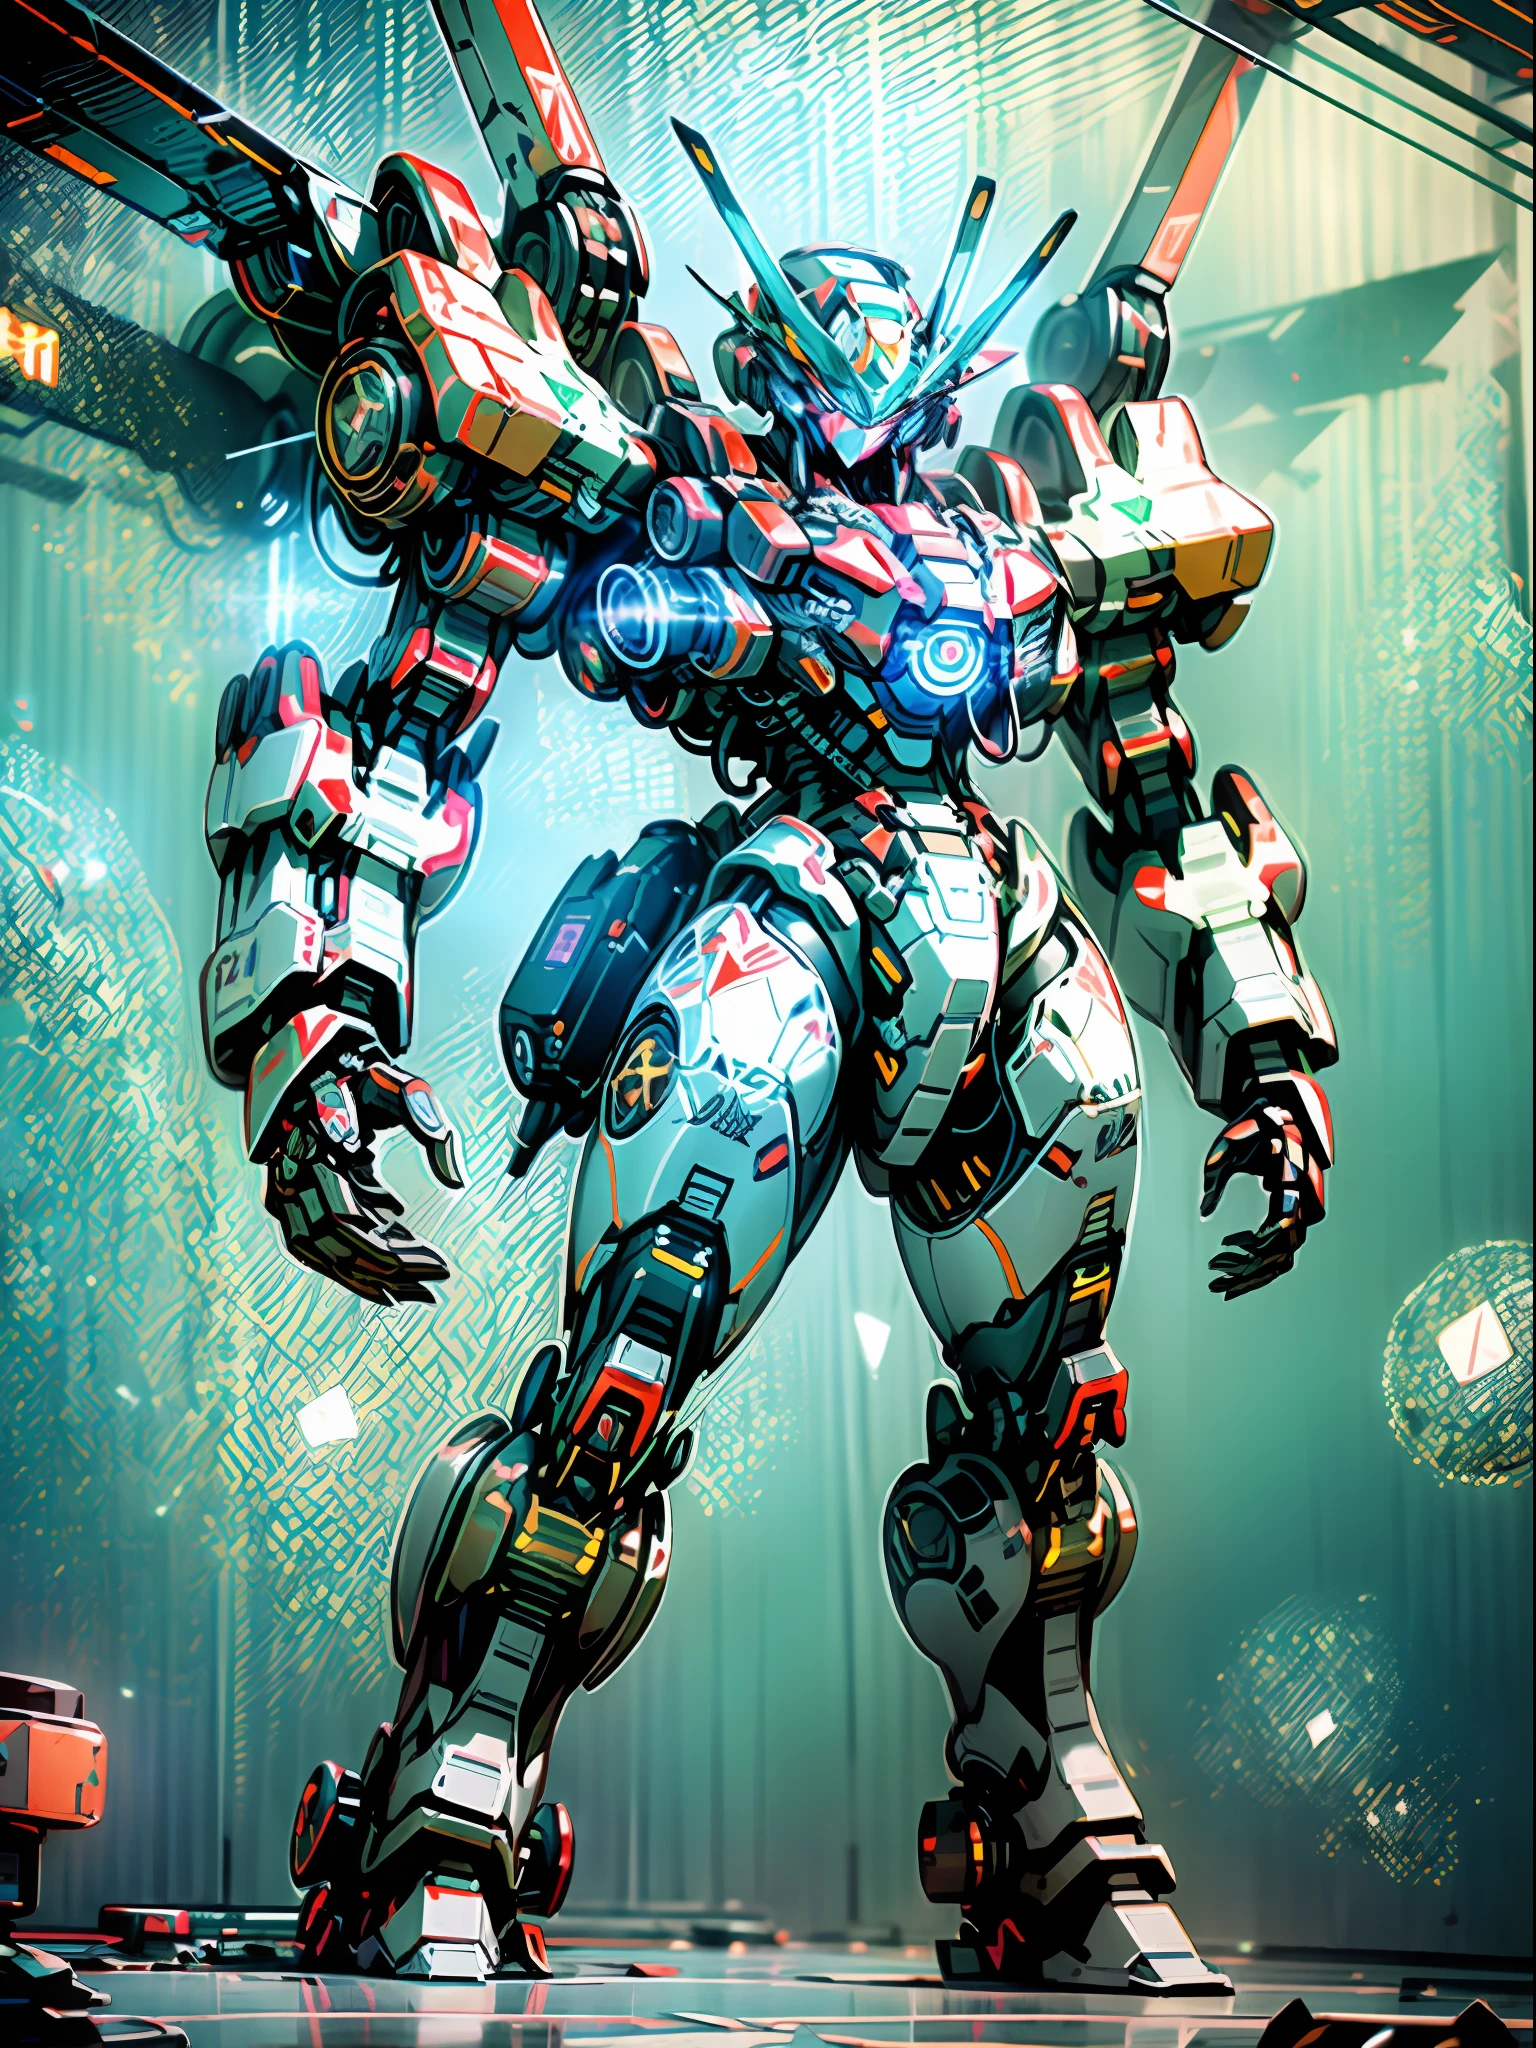 ((beste Qualität)), ((Meisterwerk)), (Sehr detailiert: 1.3), 8K, cooles Gemälde, voller Sci-Fi-Atmosphäre, schwarzer Assassine mit zwei Messern steht hinter einem riesigen Gundam-Mech, stromlinienförmige schwarze Rüstung mit komplexen Waffen und Ausrüstung dahinter, Humanoider Gundam-Mech, Anime-Mecha-Ästhetik, perfekte Körperproportionen, Head-Up-Ansicht, Stehhaltung, Militärischer Riesenmech, Raketen, Felsen, futuristische Technologie, Realismus, dunkle Wolken am Himmel, dunkler Kriegshintergrund, Raytracing, Lichtteilchen, nvidia trtx, Superauflösung, Unwirklich 5, Untergrundstreuung, Glanz- und Albedokarten, Drittelregel, Große Blendenöffnung, Kampfhaltung, 8K Rohdaten, hocheffiziente Subpixel, Subpixel Convolution, Lichtteilchen, Lichtstreuung, Tyndall-Effekt, Raytracing.